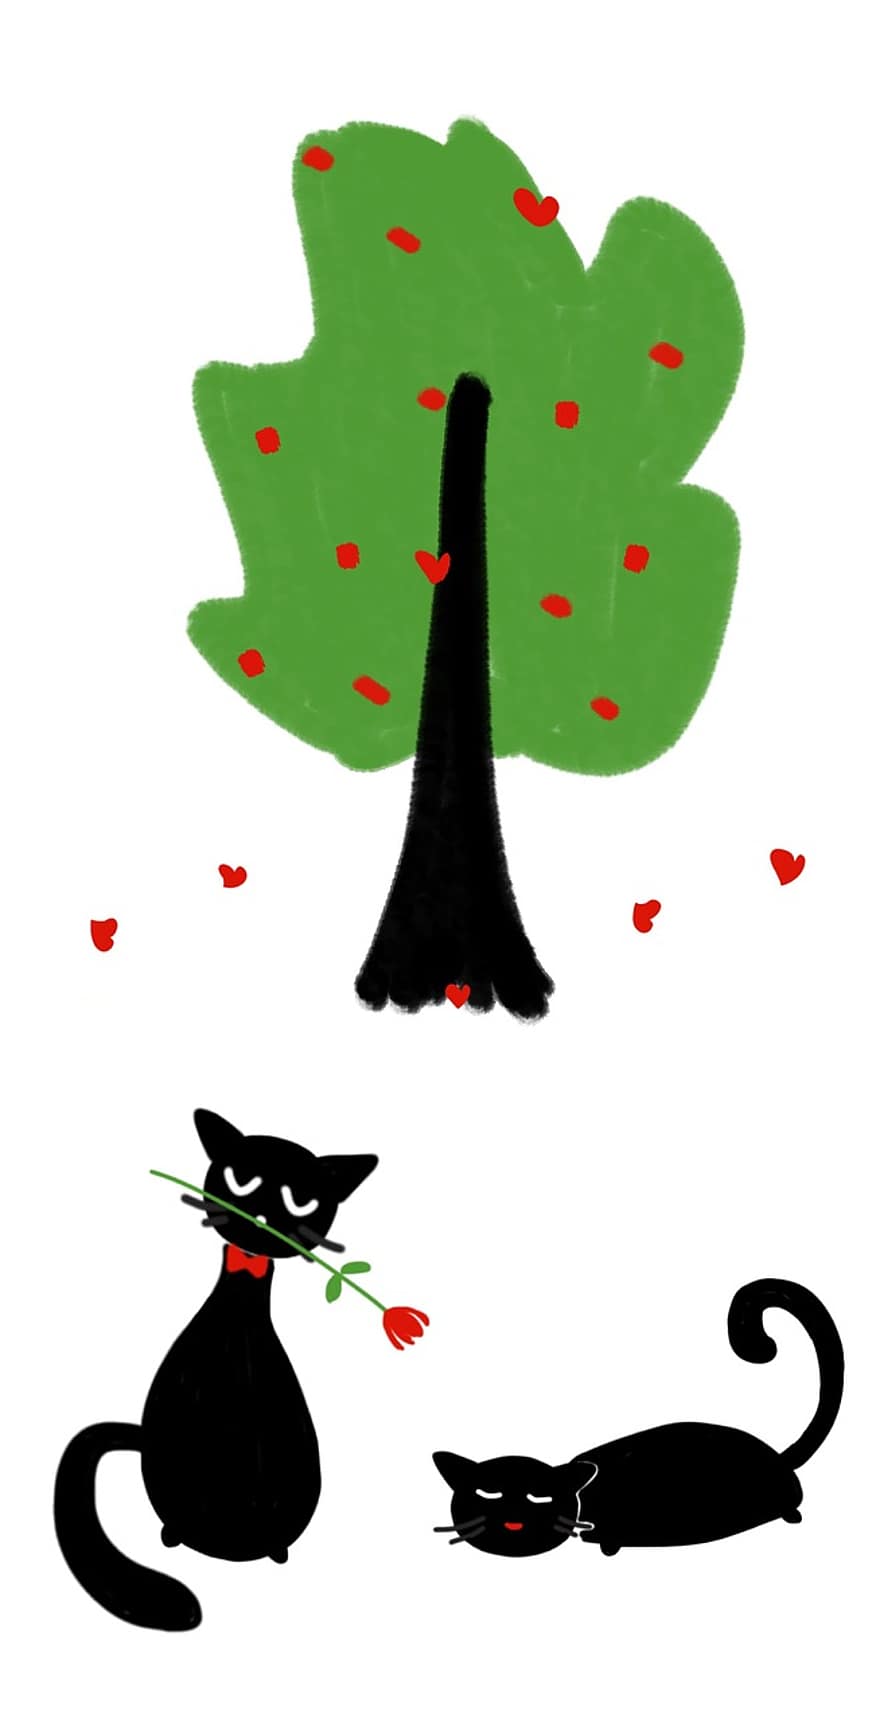 고양이, 나무, 애정, 발렌타인 데이, 심장, 녹색 나무, 사랑에 빠진 고양이, 검은 고양이들, 장미, 꽃, 낭만적 인